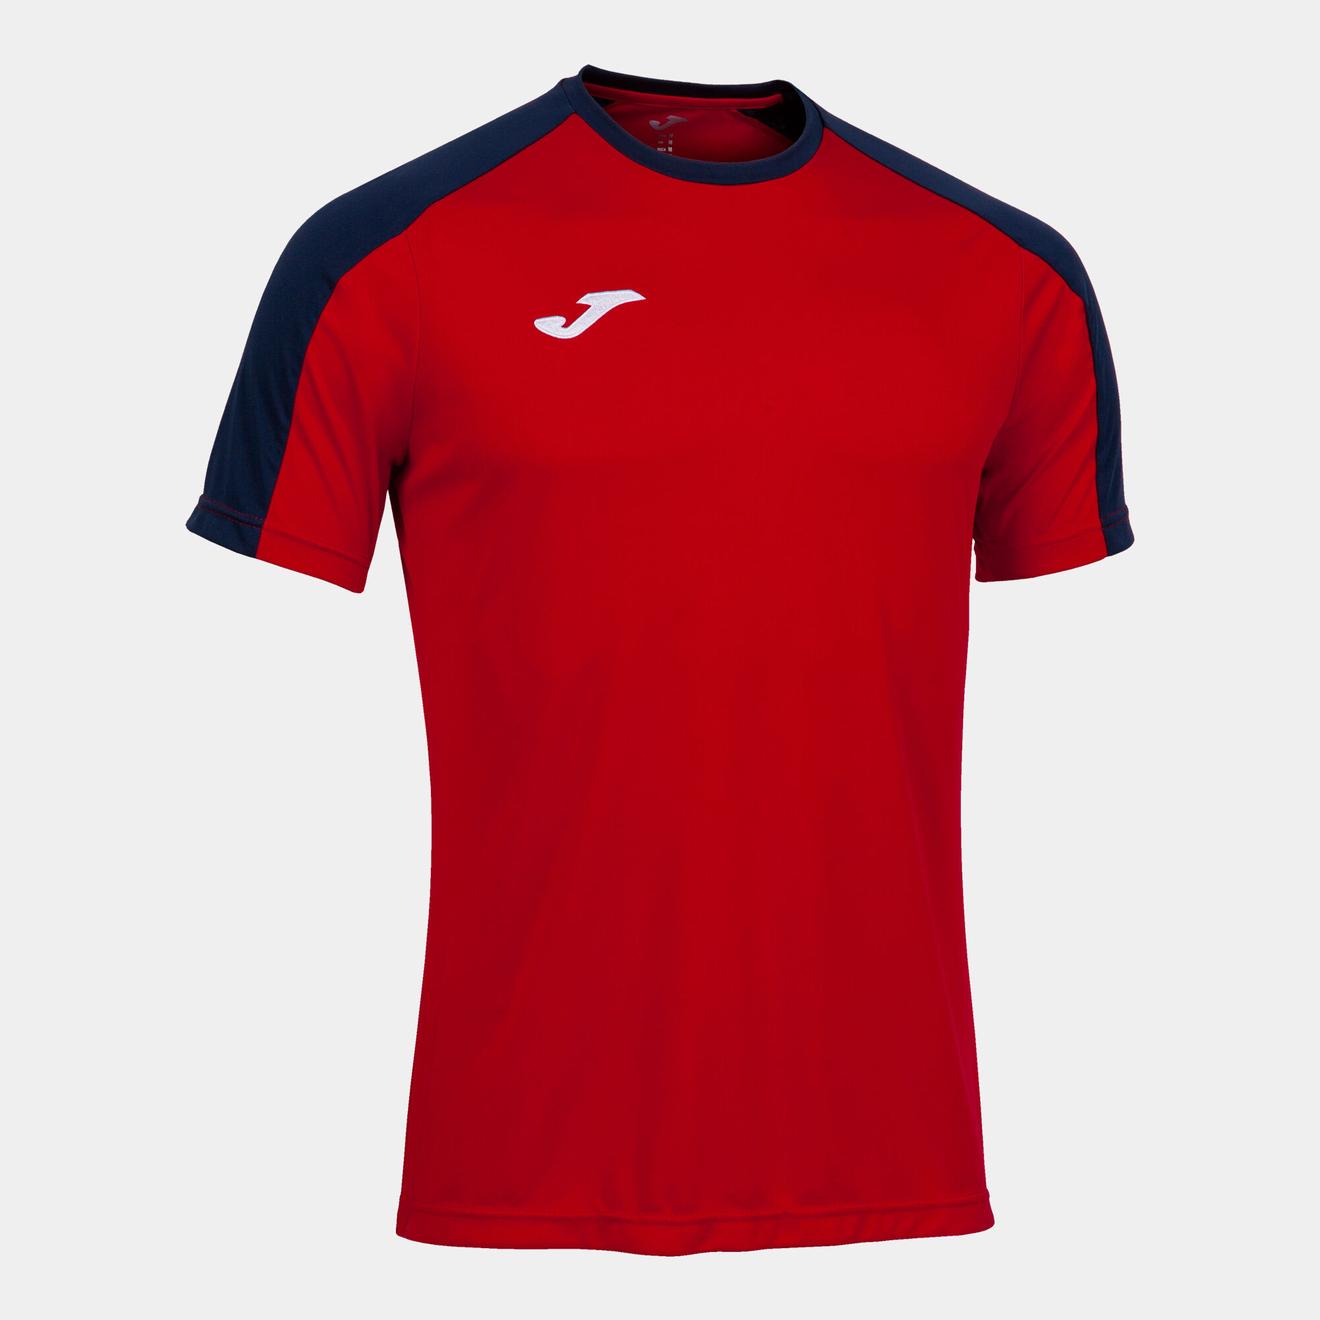 Oferta de Camiseta manga corta hombre Eco Championship rojo marino por $17,56 en Joma